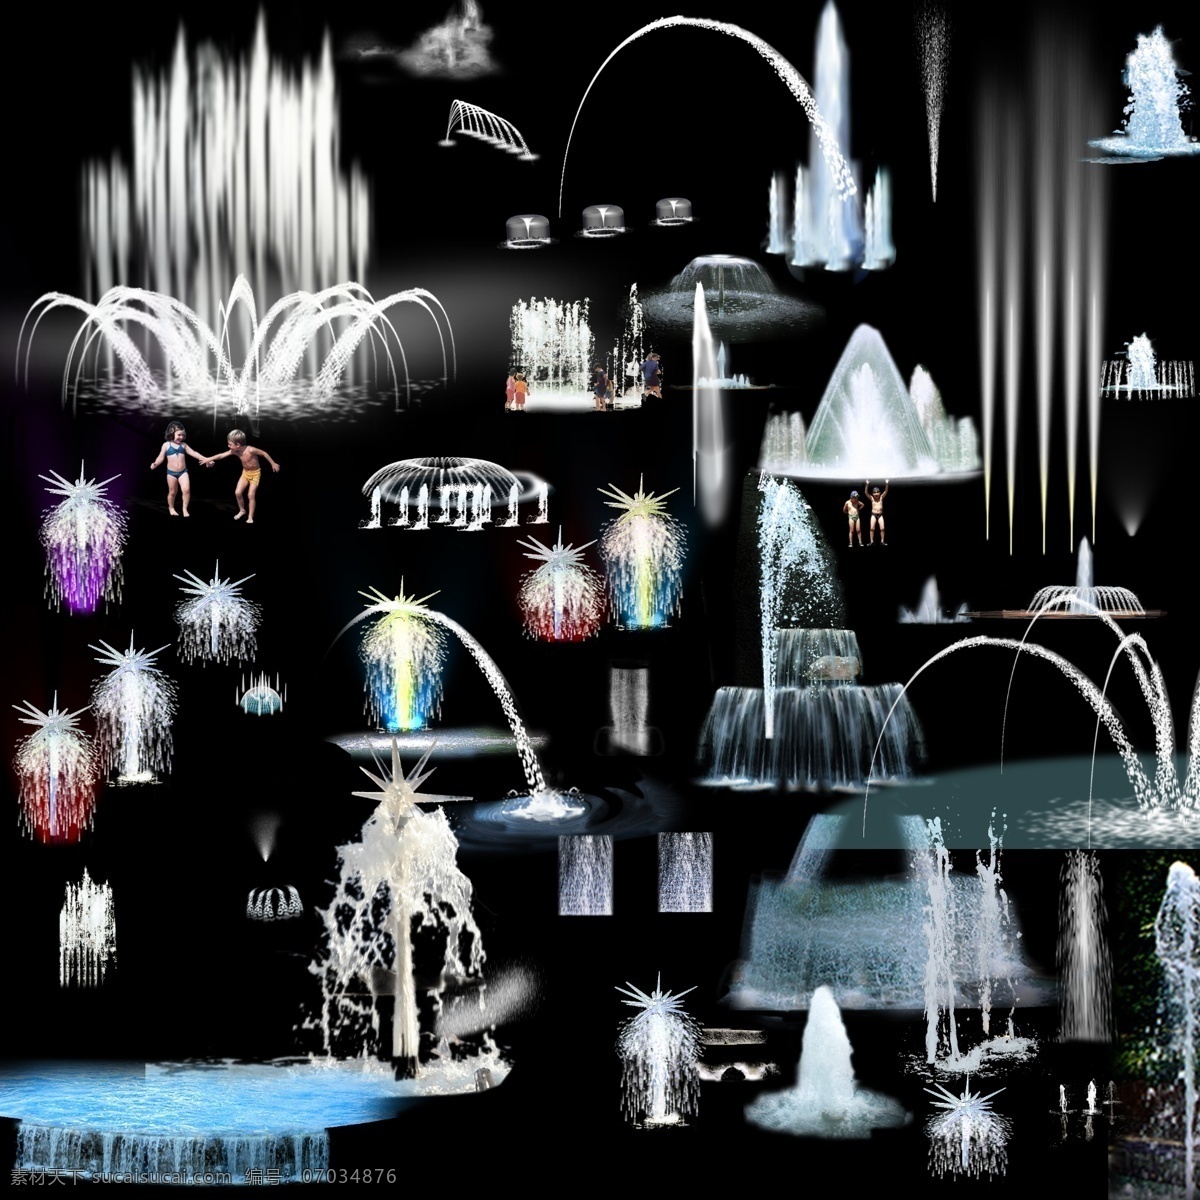 喷泉 psd分层 园林景观 喷泉设计 3d模型素材 室内装饰模型